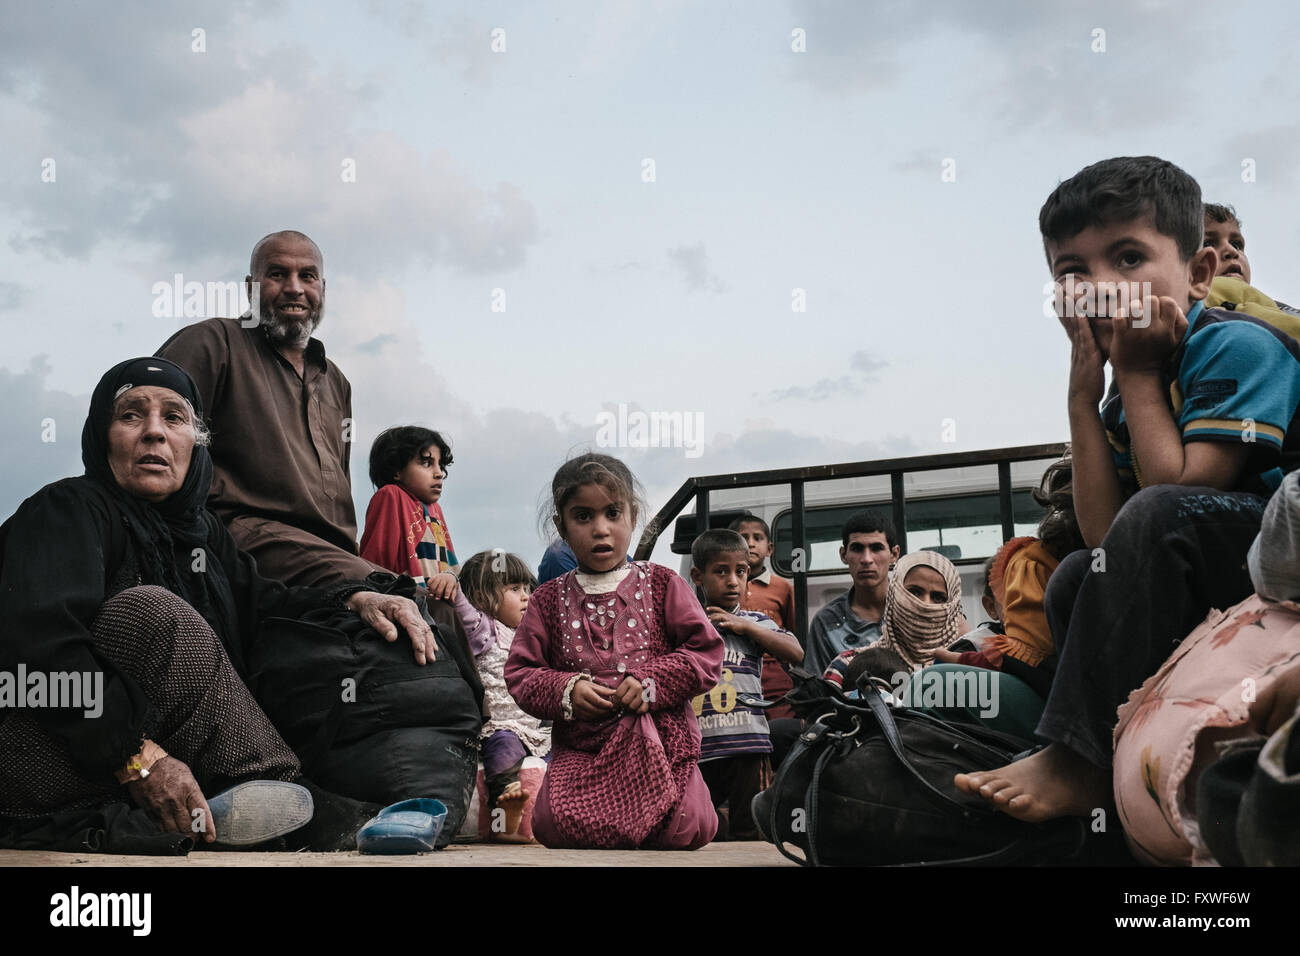 Aide refugiees pechmergas qui fuient Mossoul - 07/04/2016 - Irak / Mossoul - personnes attendent en Van qui les mènera à un les réfugiés Banque D'Images